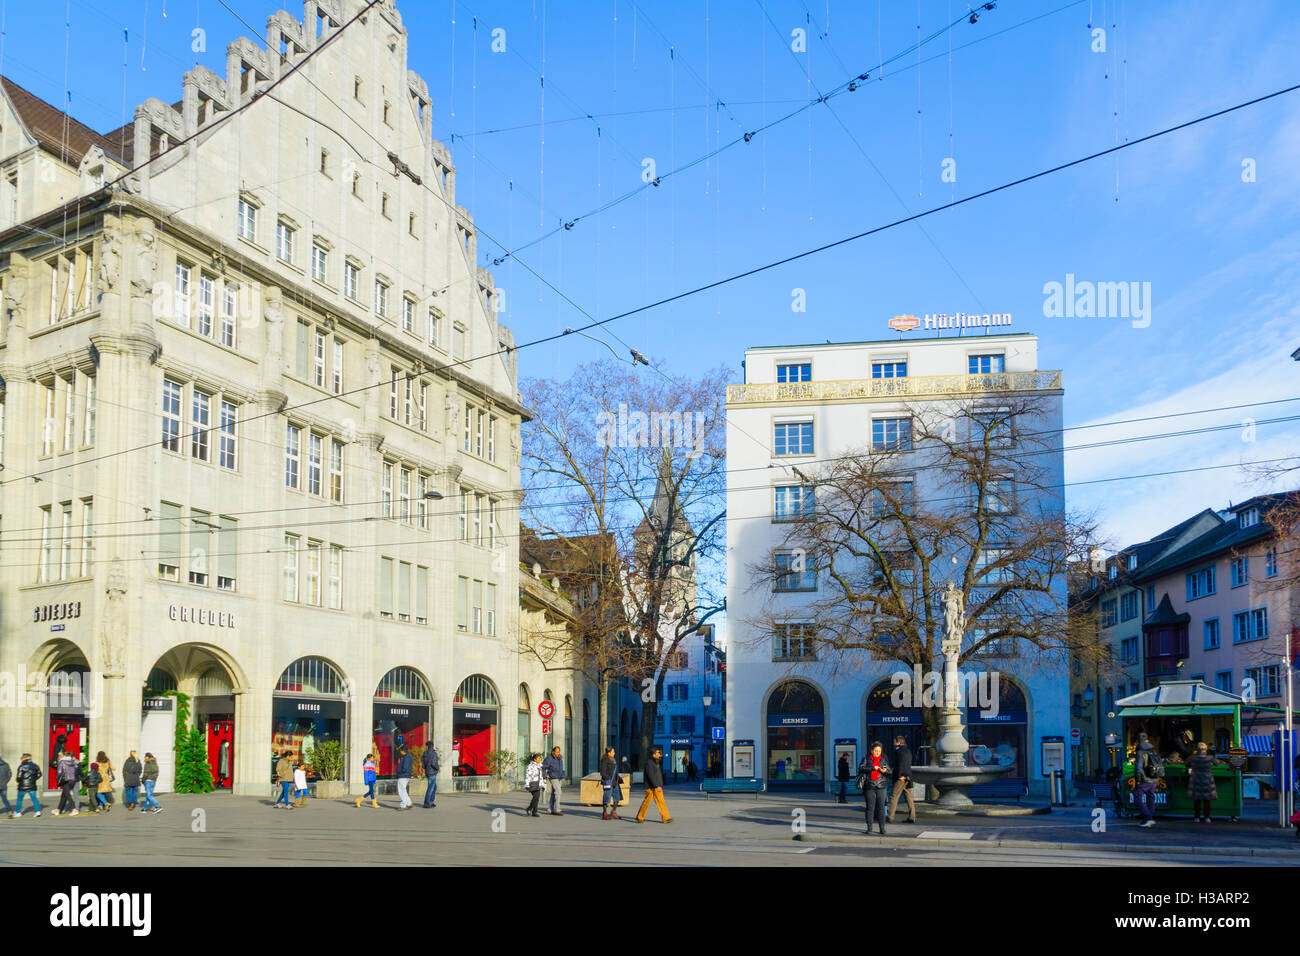 Zürich, Schweiz - 27. Dezember 2015: Szene quadratisch, mit einheimischen und Besuchern, in Zürich, Großbrit Paradeplatz (Parade) Stockfoto